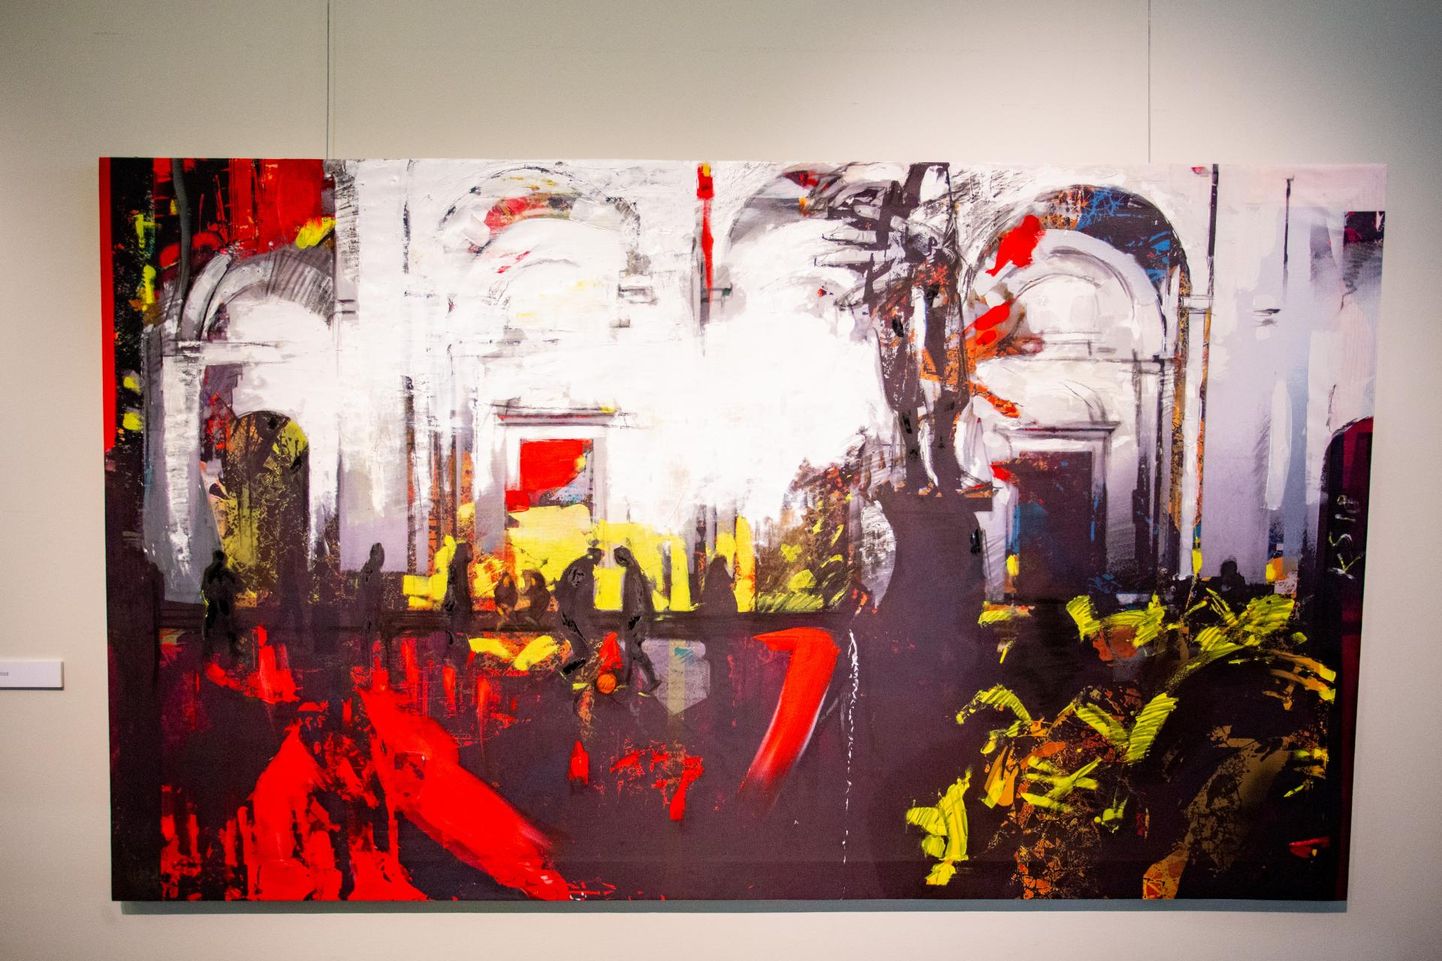 Krista Simson ja tema maal “Agul” näitusel “Agul”.